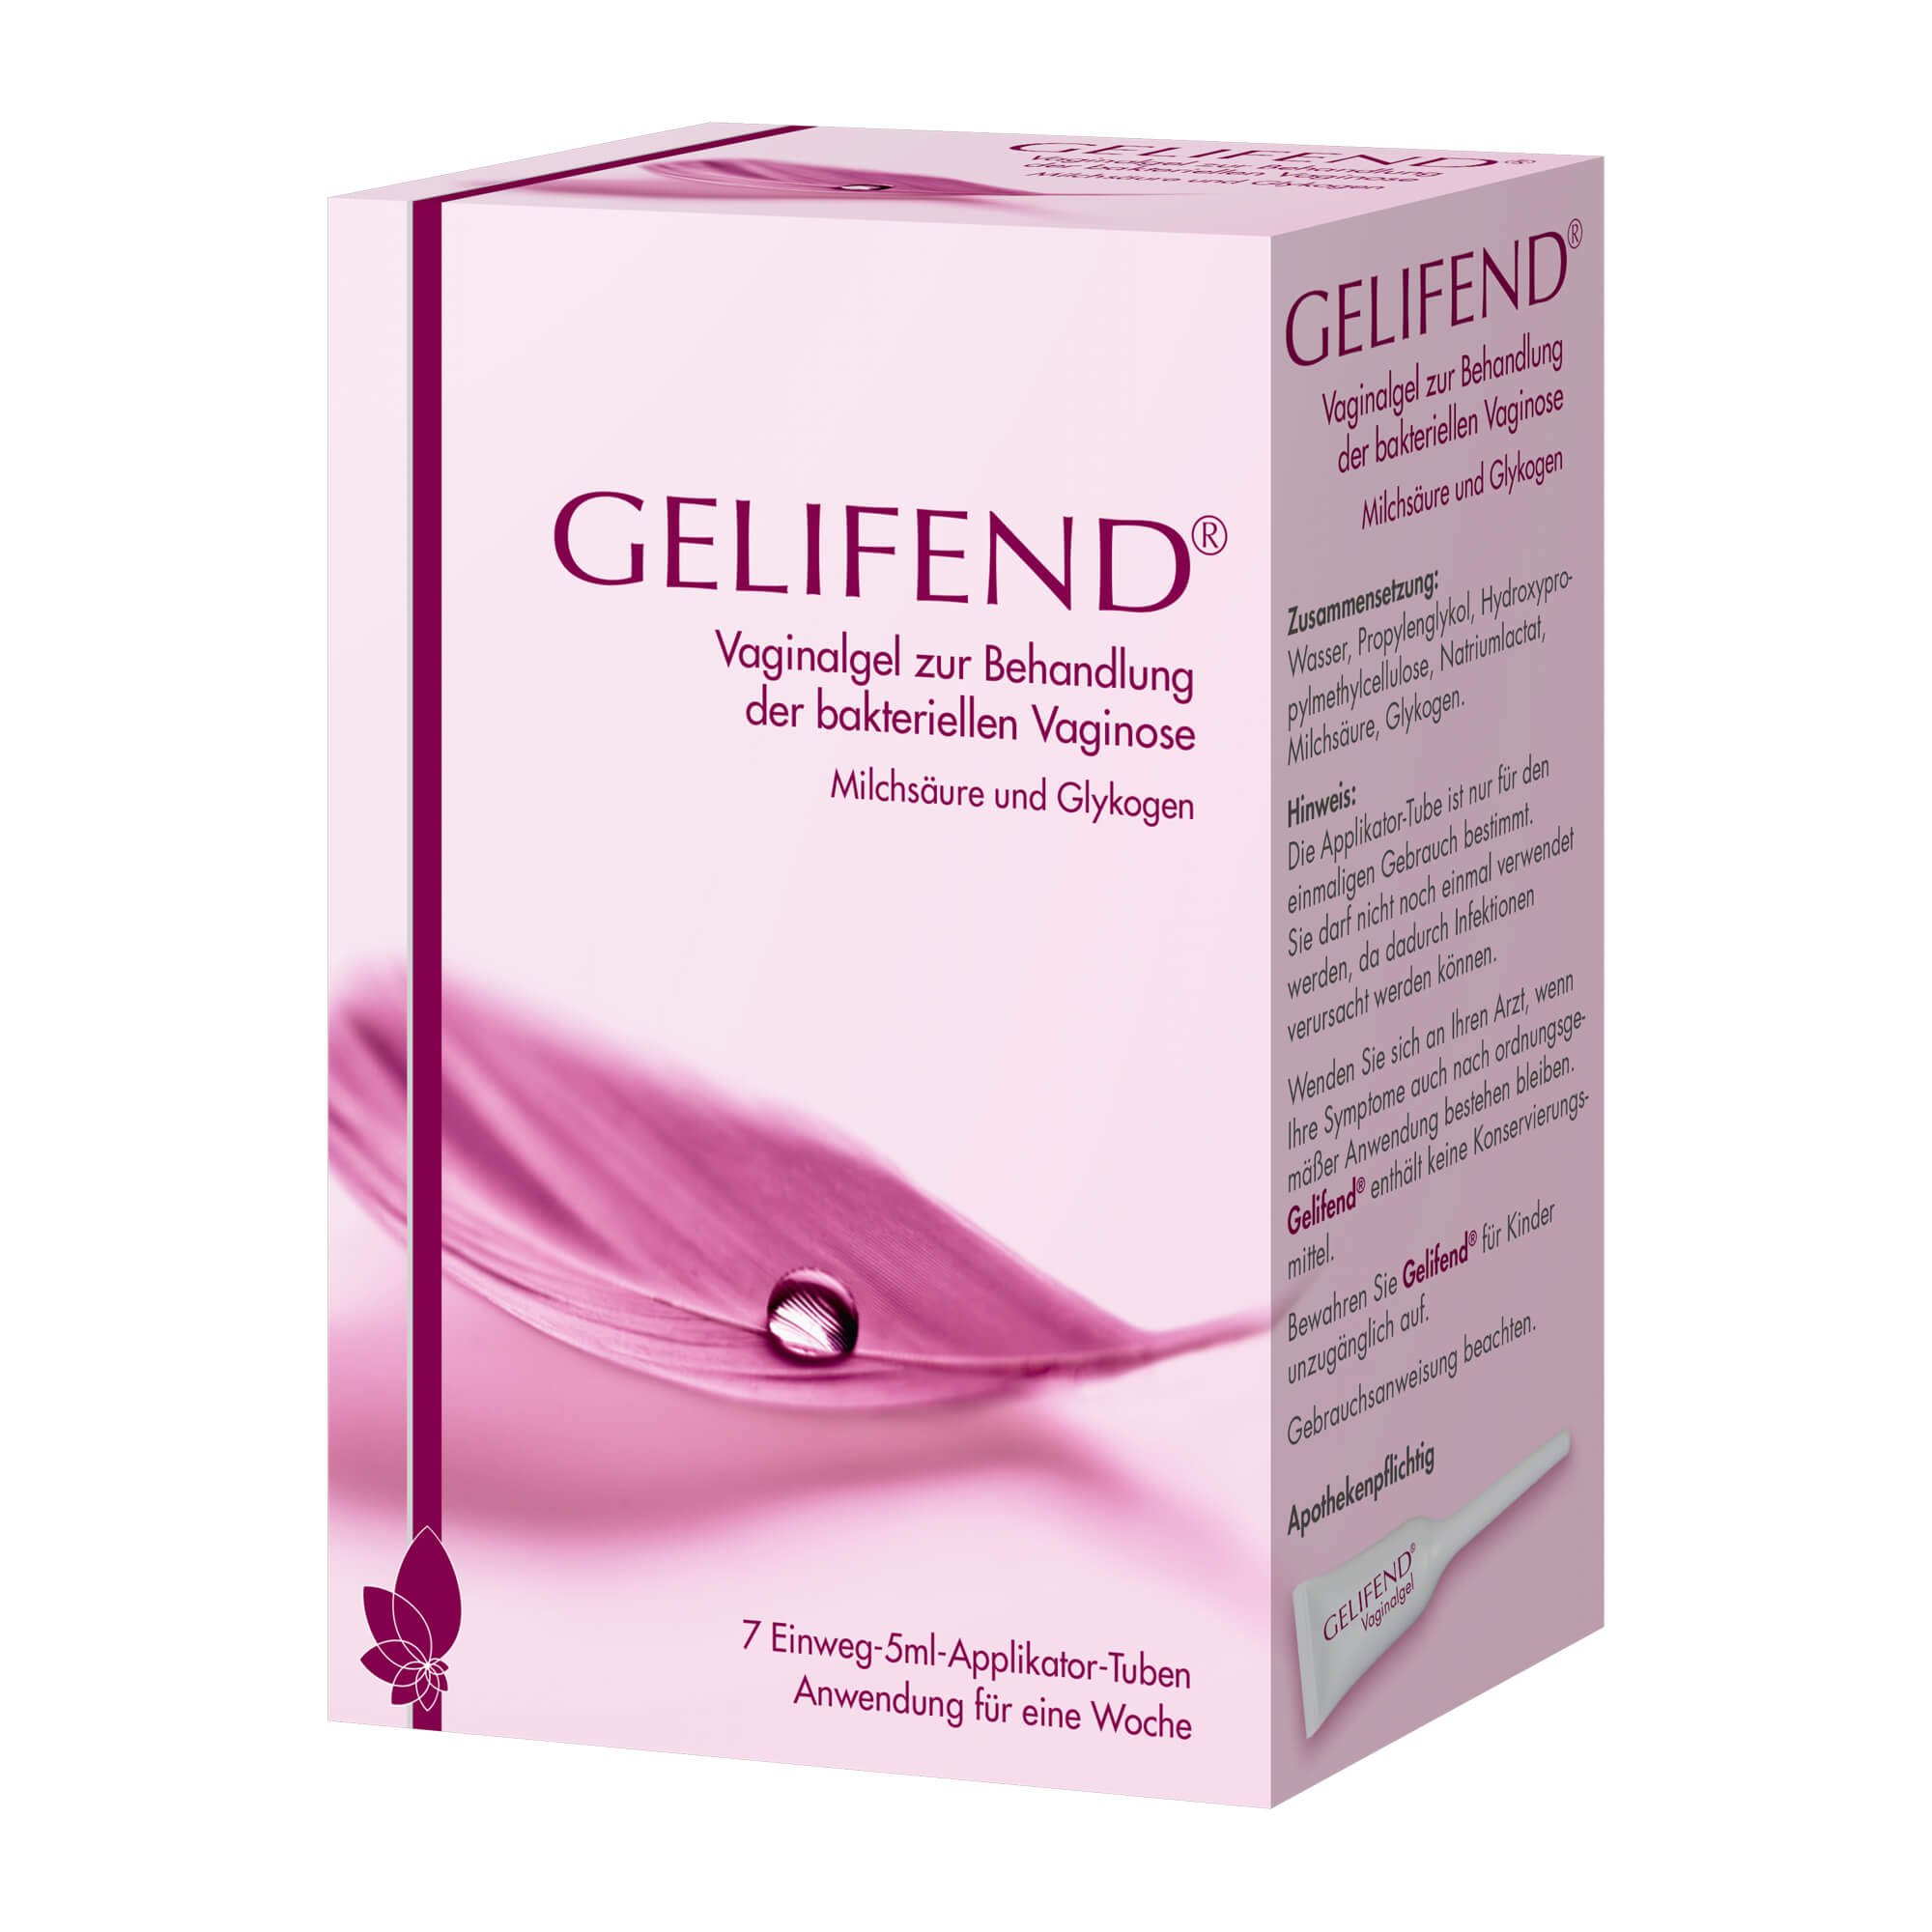 GELIFEND lindert und beseitigt die Beschwerden einer Bakteriellen Vaginose schnell und nachhaltig.